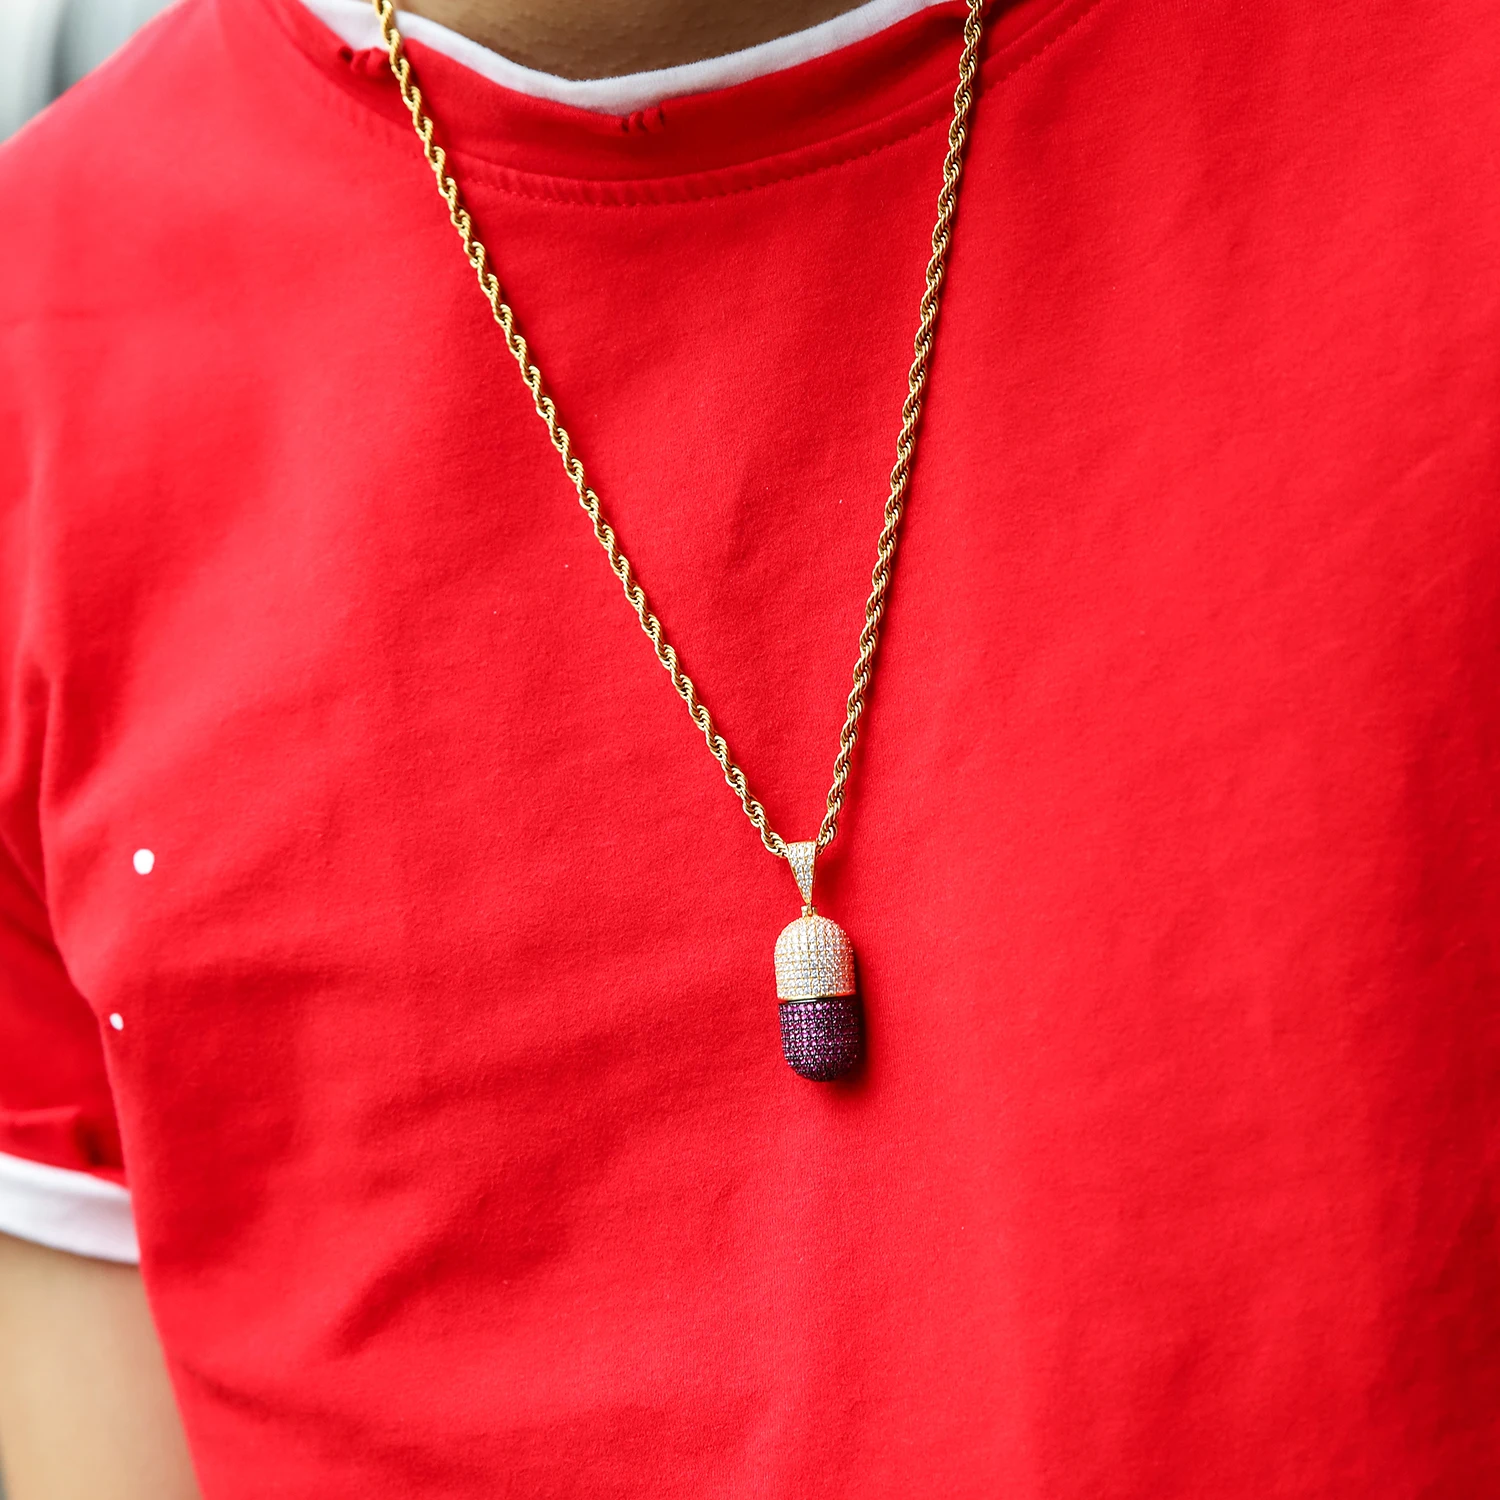 NYUK хип хоп модные ювелирные изделия ожерелье с капсулами можно открыть капсулы кулон кубический циркон медное ожерелье со льдом съемный унисекс